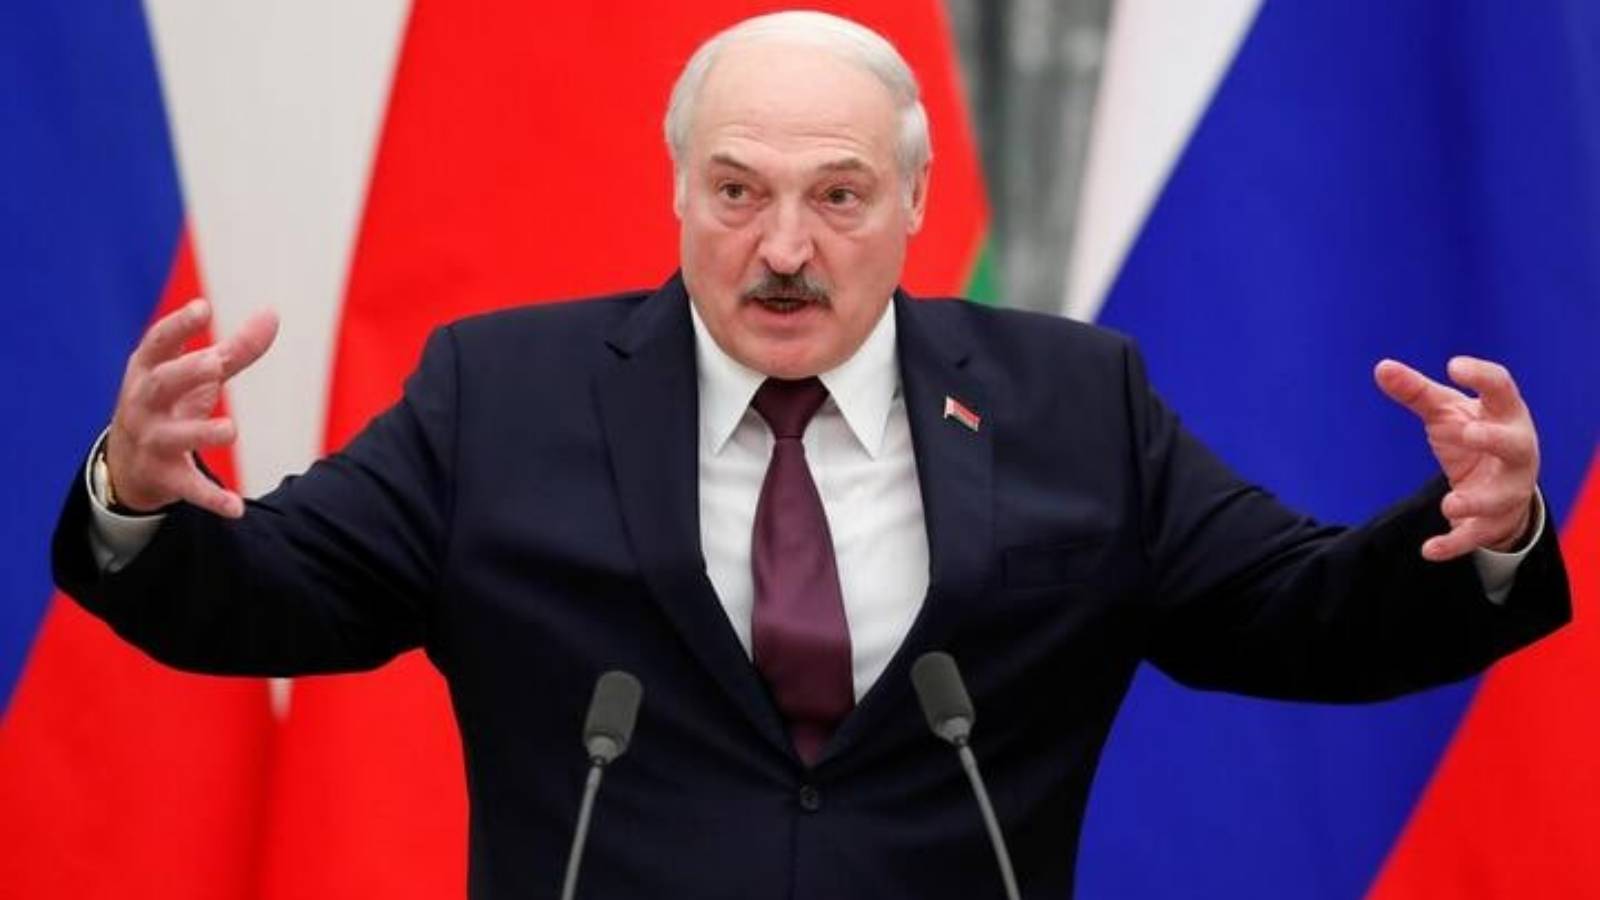 Aleksandr Loekasjenko beschuldigt Polen ervan Oekraïne en Wit-Rusland in stukken te willen hakken